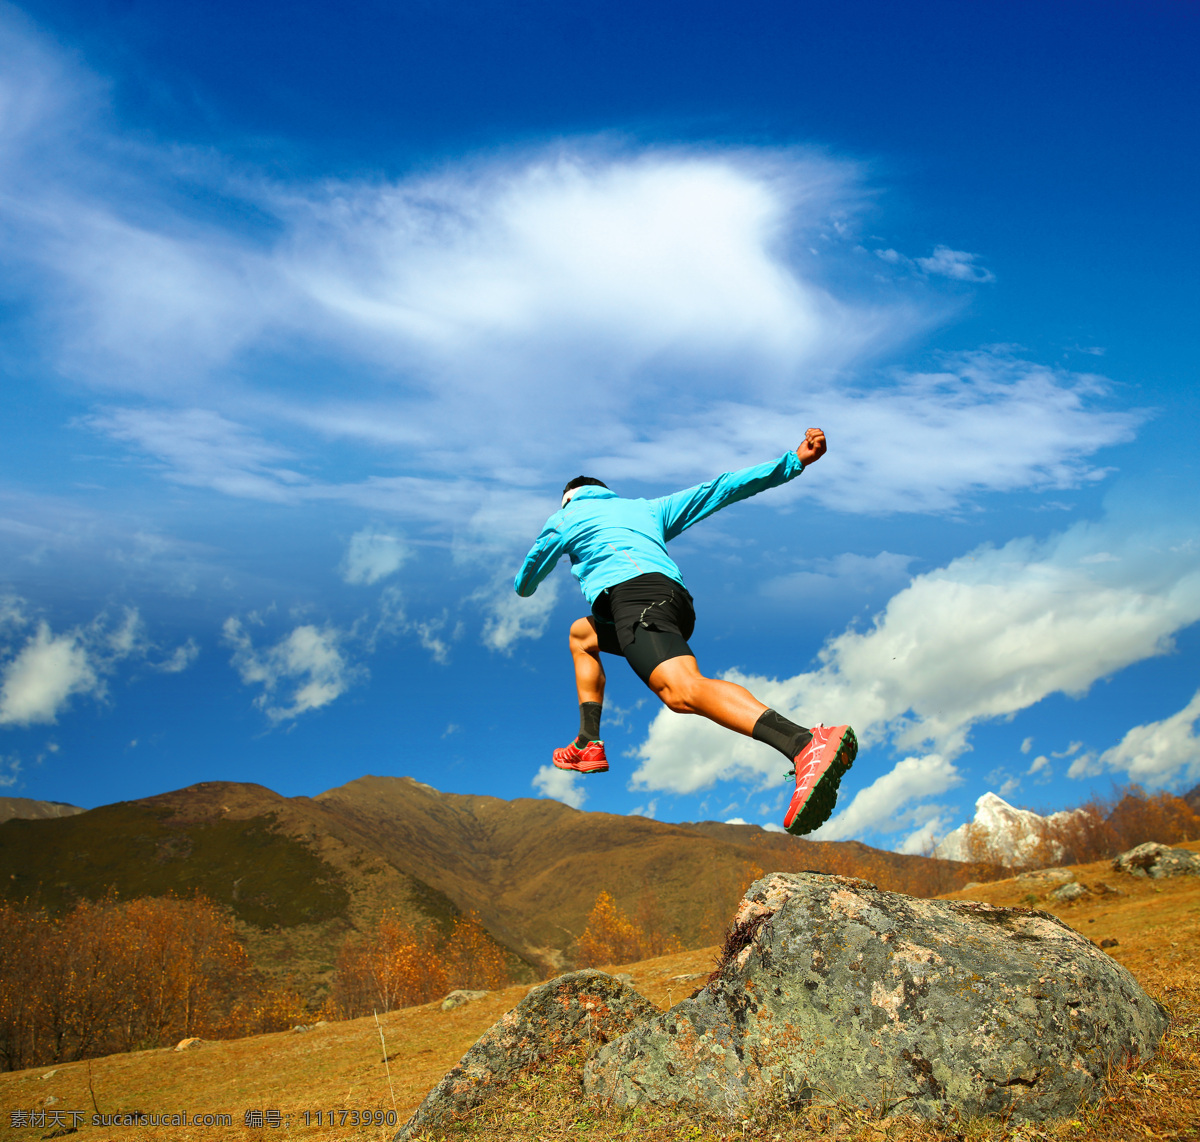 奔跑的男子 奔跑 跑步 户外 天空 蓝天 运动 激情 各色人物 文化艺术 体育运动